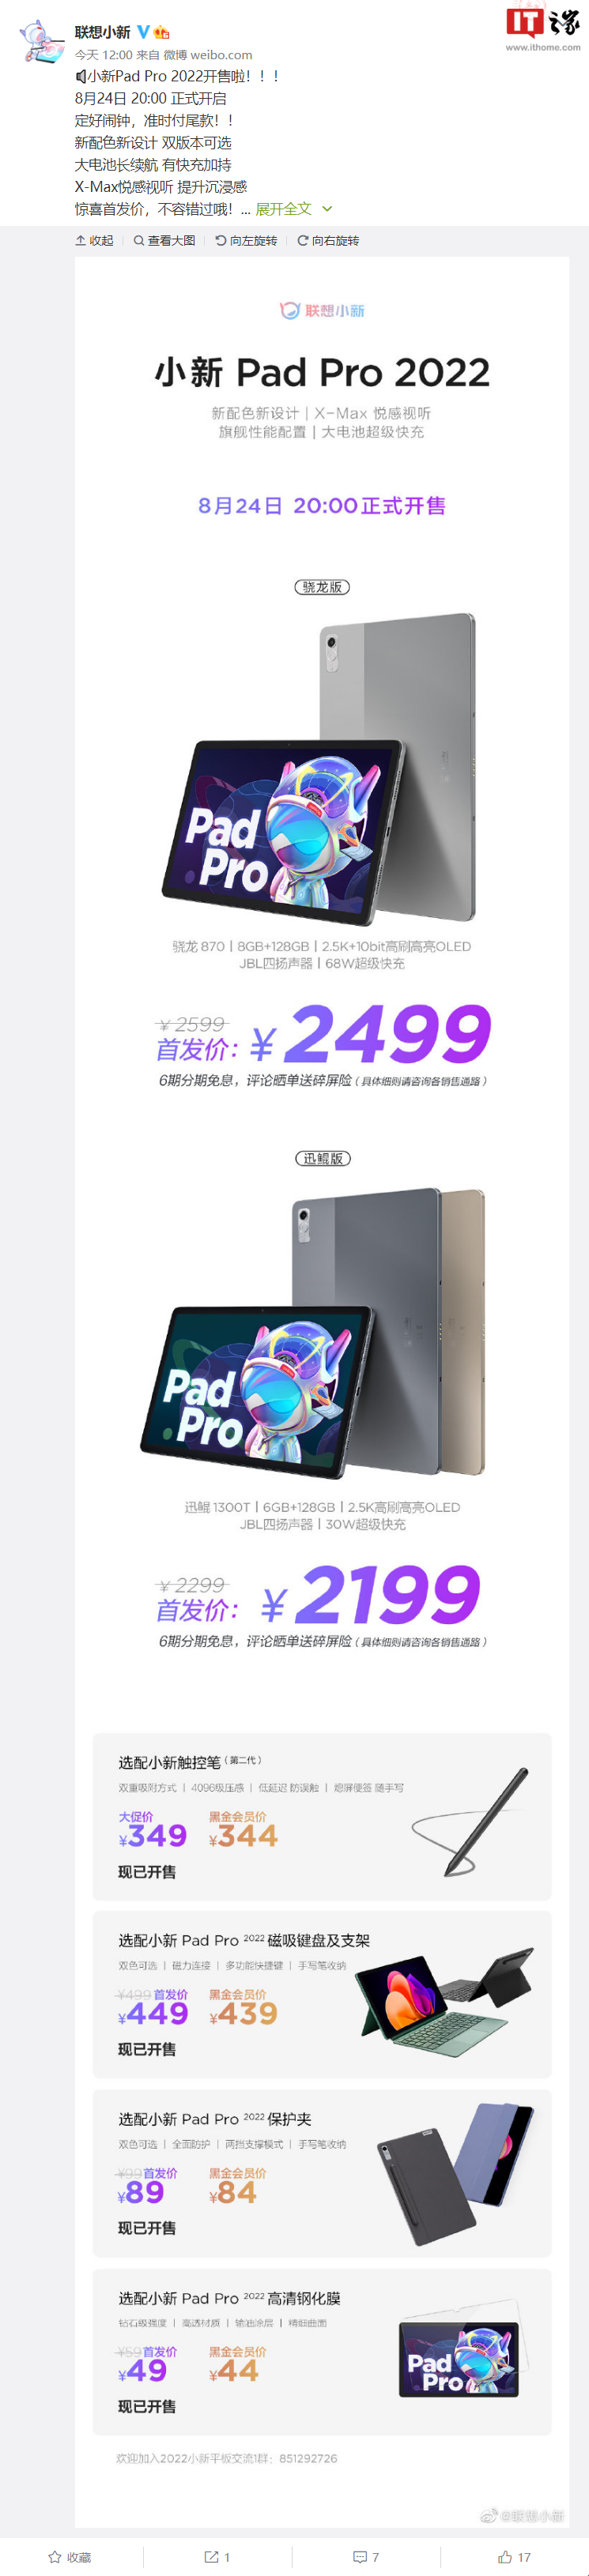 联想小新 Pad Pro 2022将在 8 月 24 正式开启销售，搭载骁龙 870 和迅鲲 1300T 两个版本